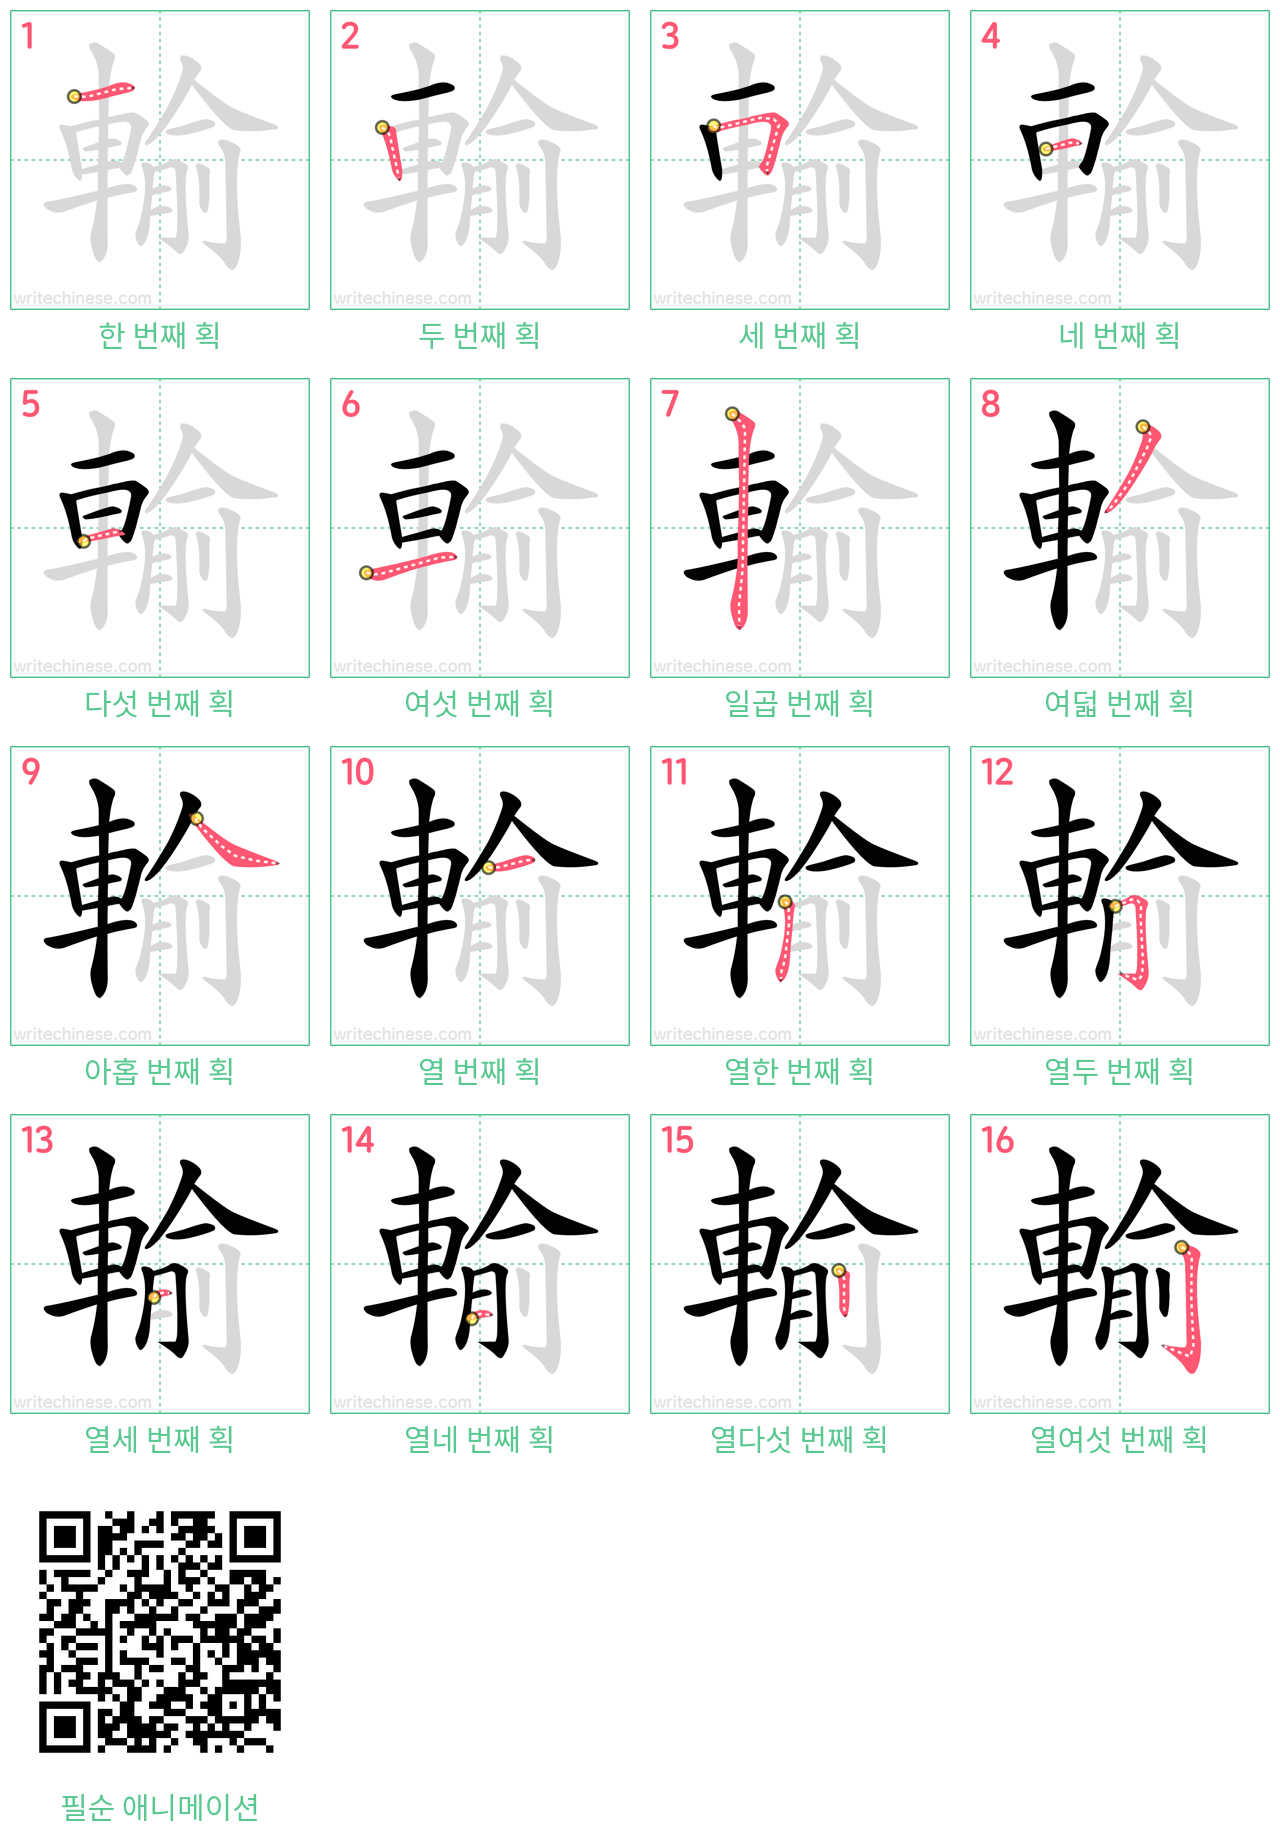 輸 step-by-step stroke order diagrams